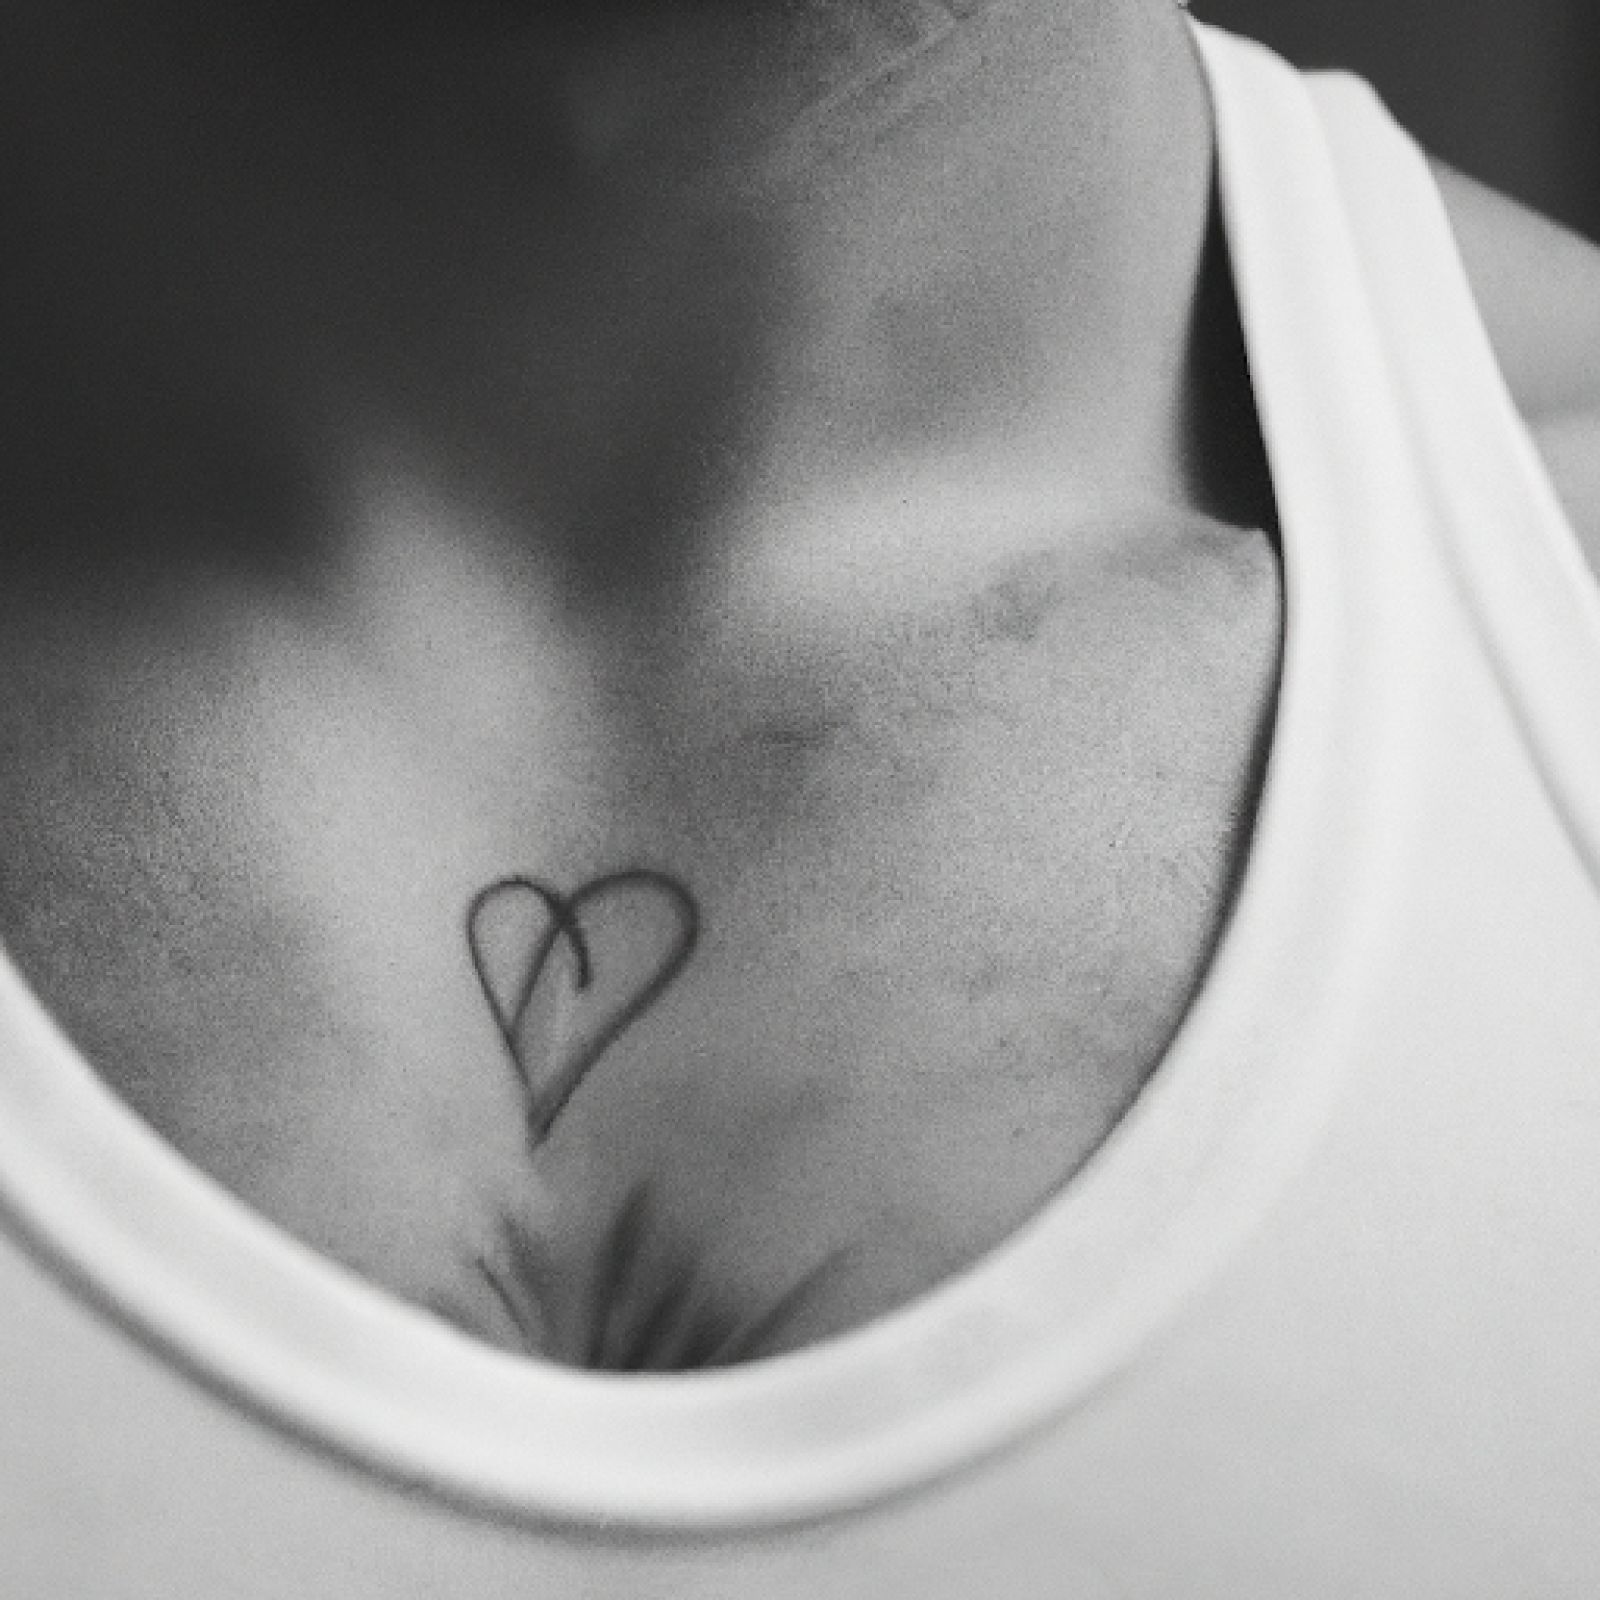 Heart tattoo on chest for men